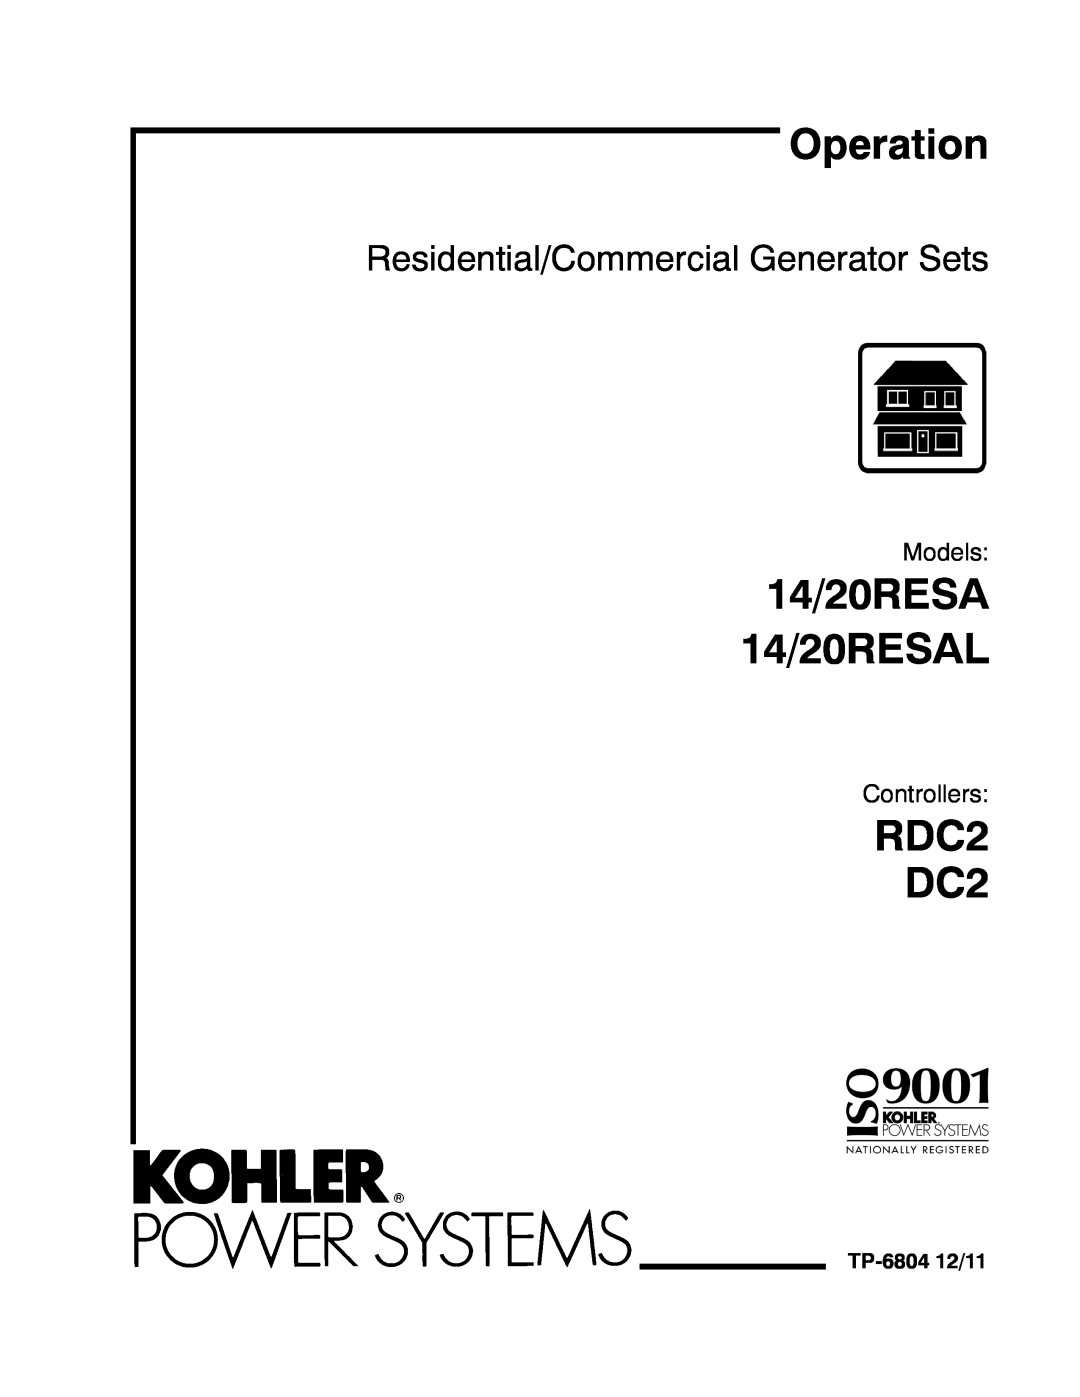 Kohler manual Models, Controllers, TP-6804 12/11, Operation, 14/20RESA 14/20RESAL, RDC2 DC2 